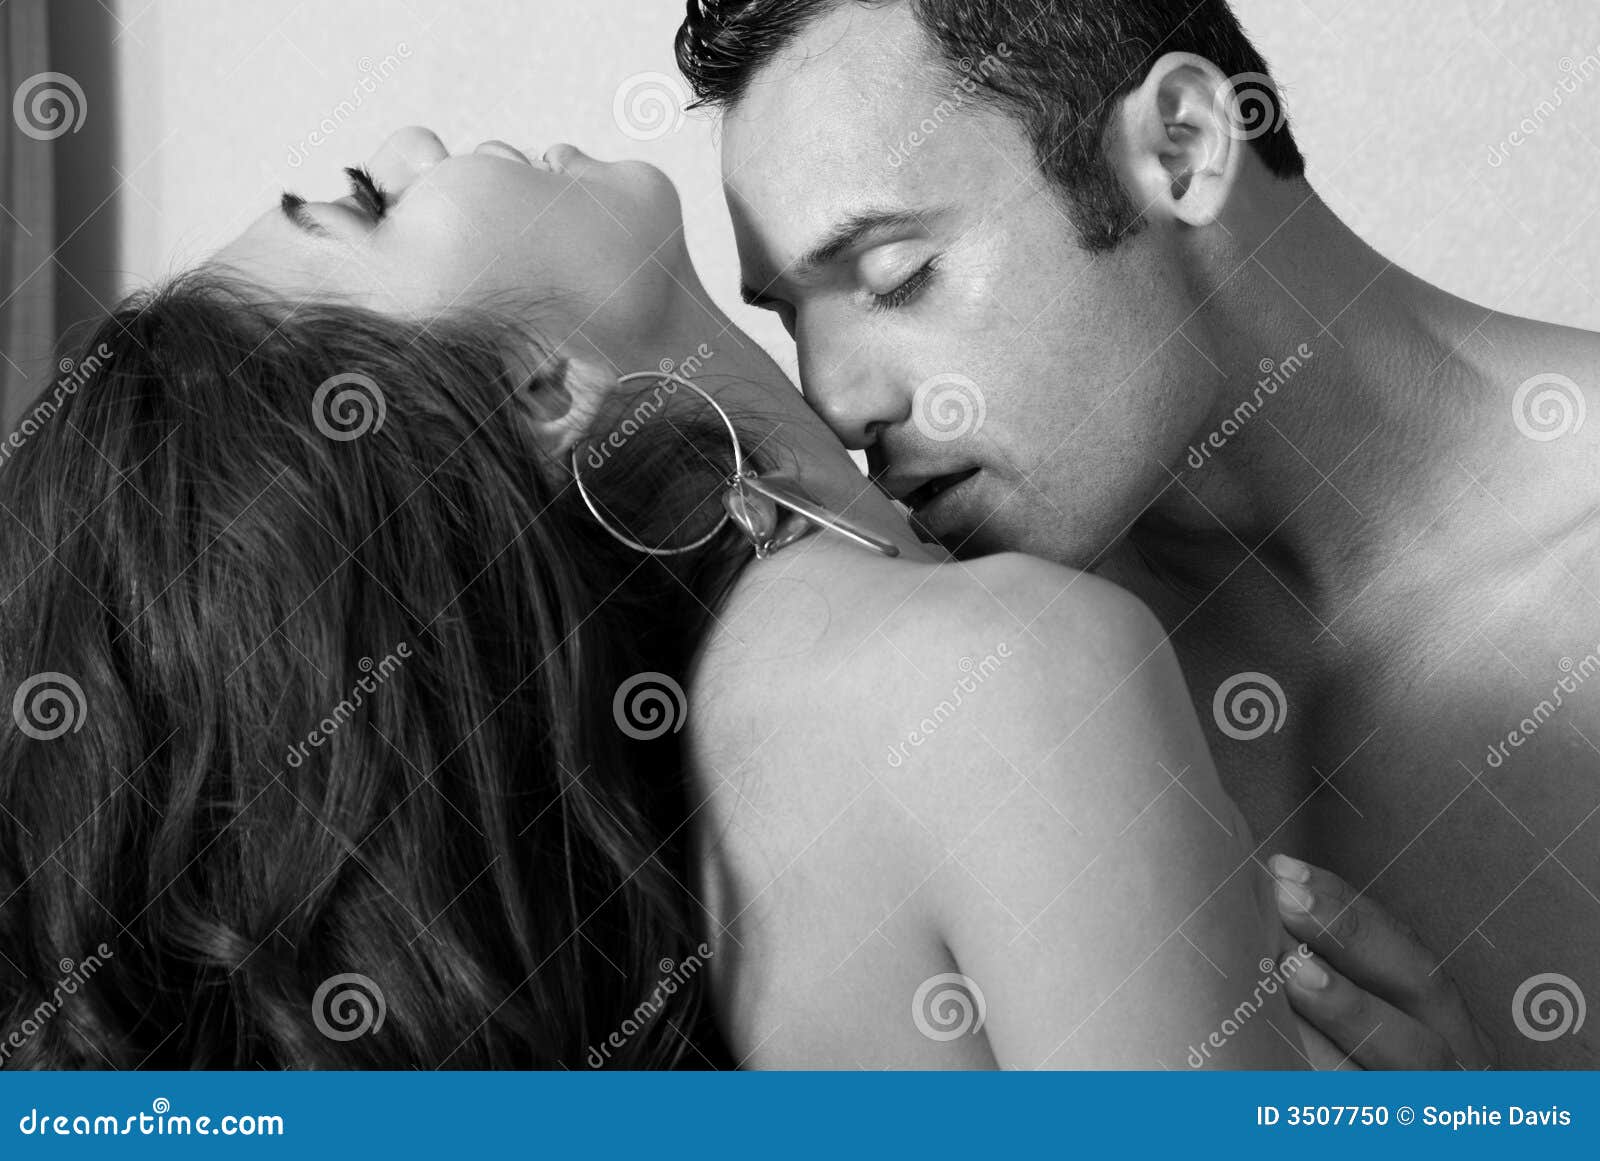 парень целует в грудь что это значит фото 17